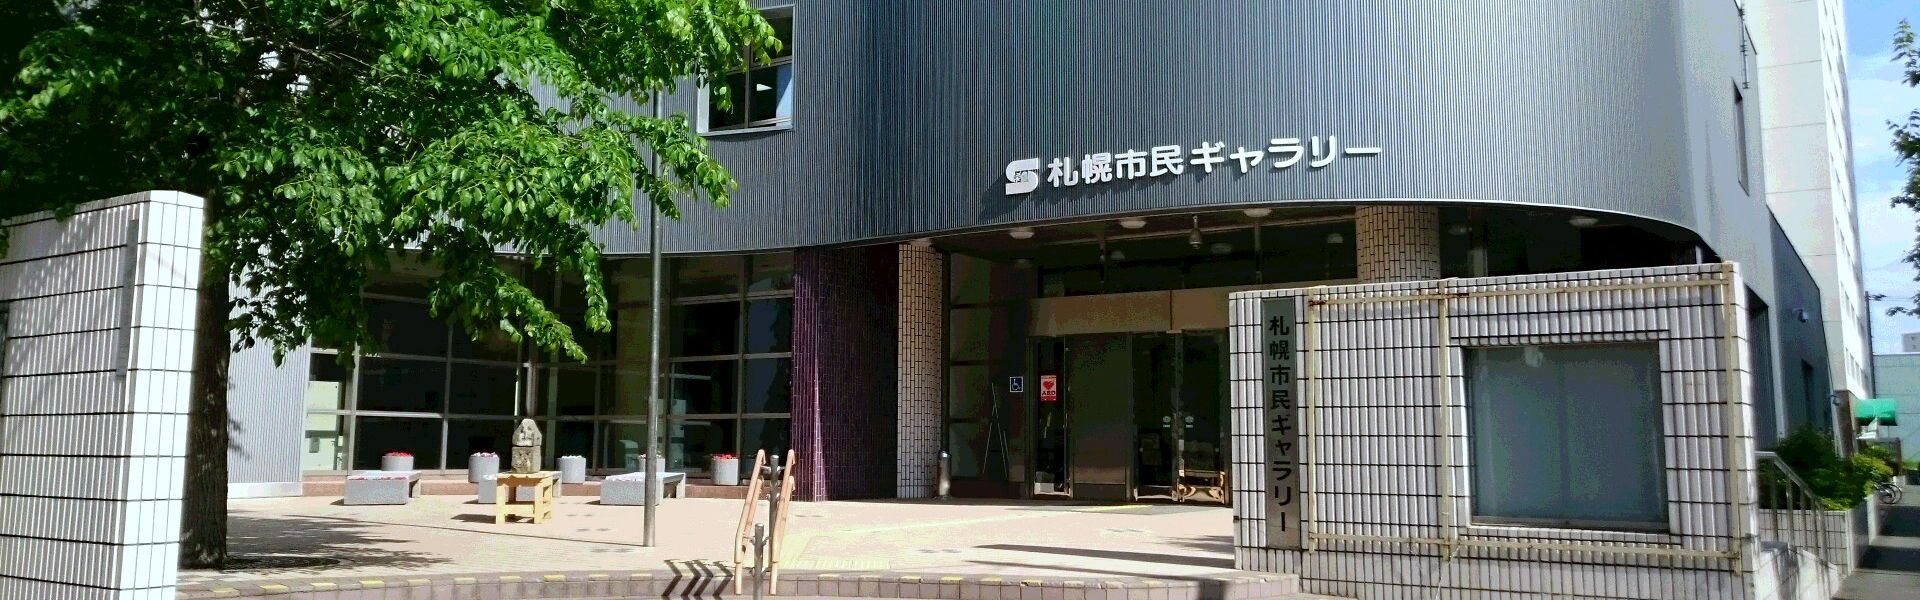 札幌市民ギャラリー外観